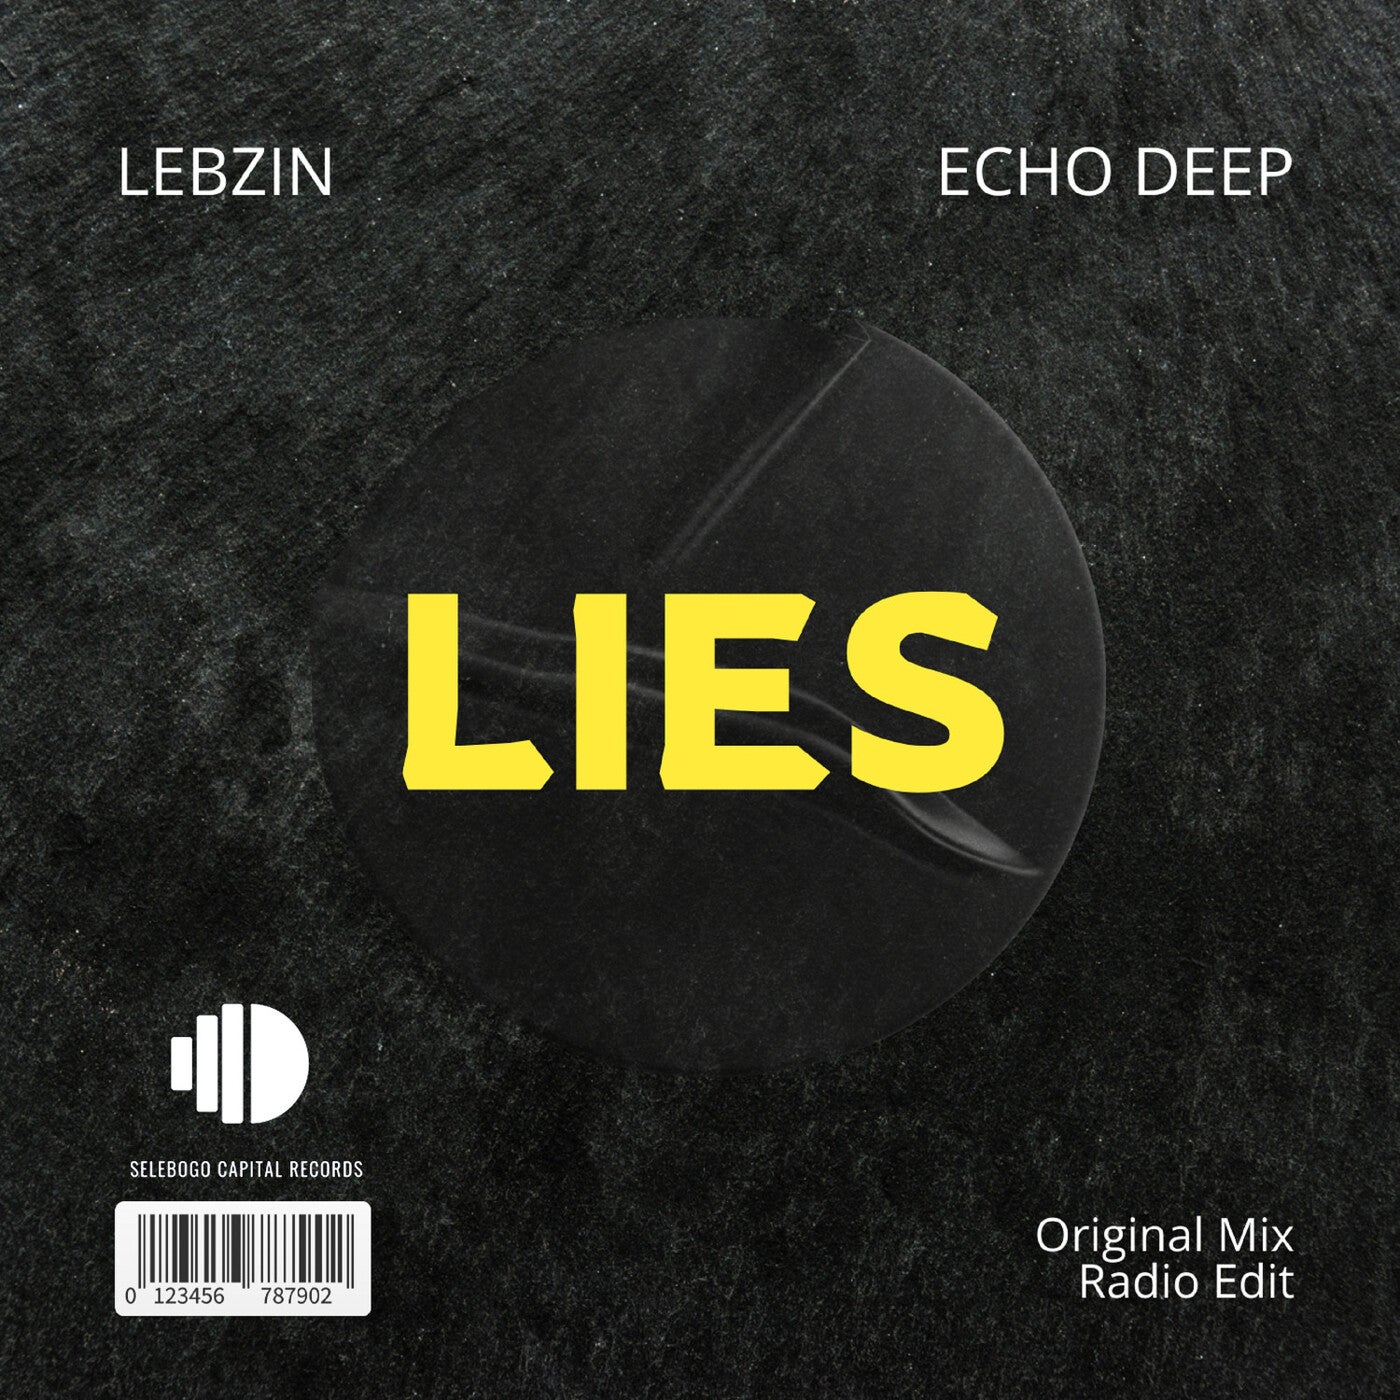 LIES (Original Mix)